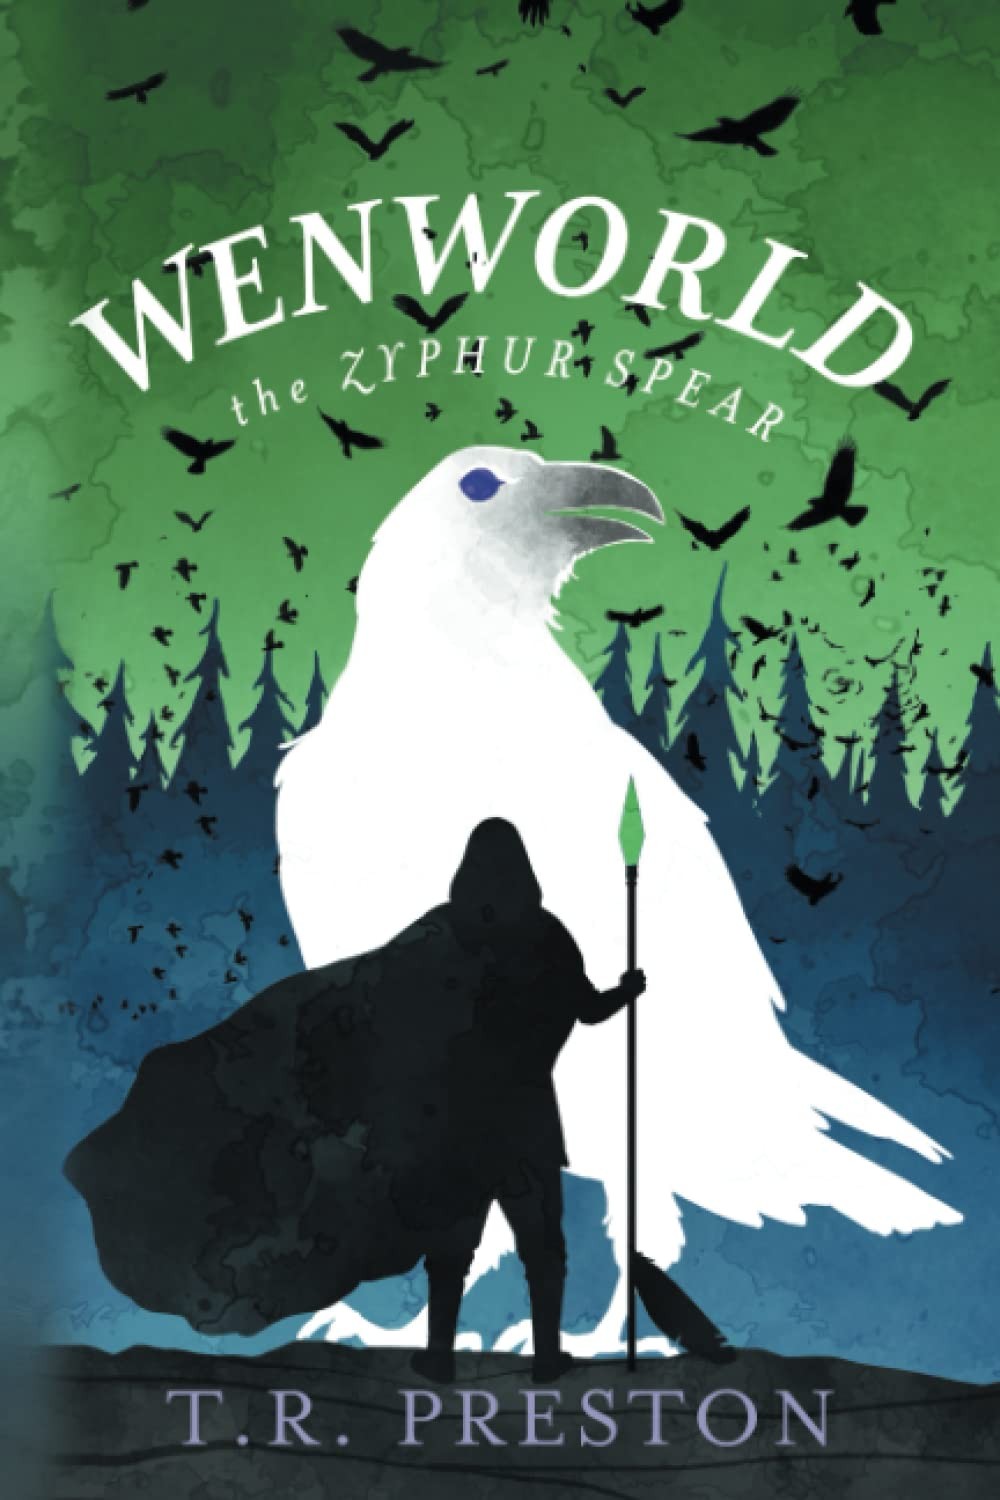 Wenworld: The Zyphur Spear